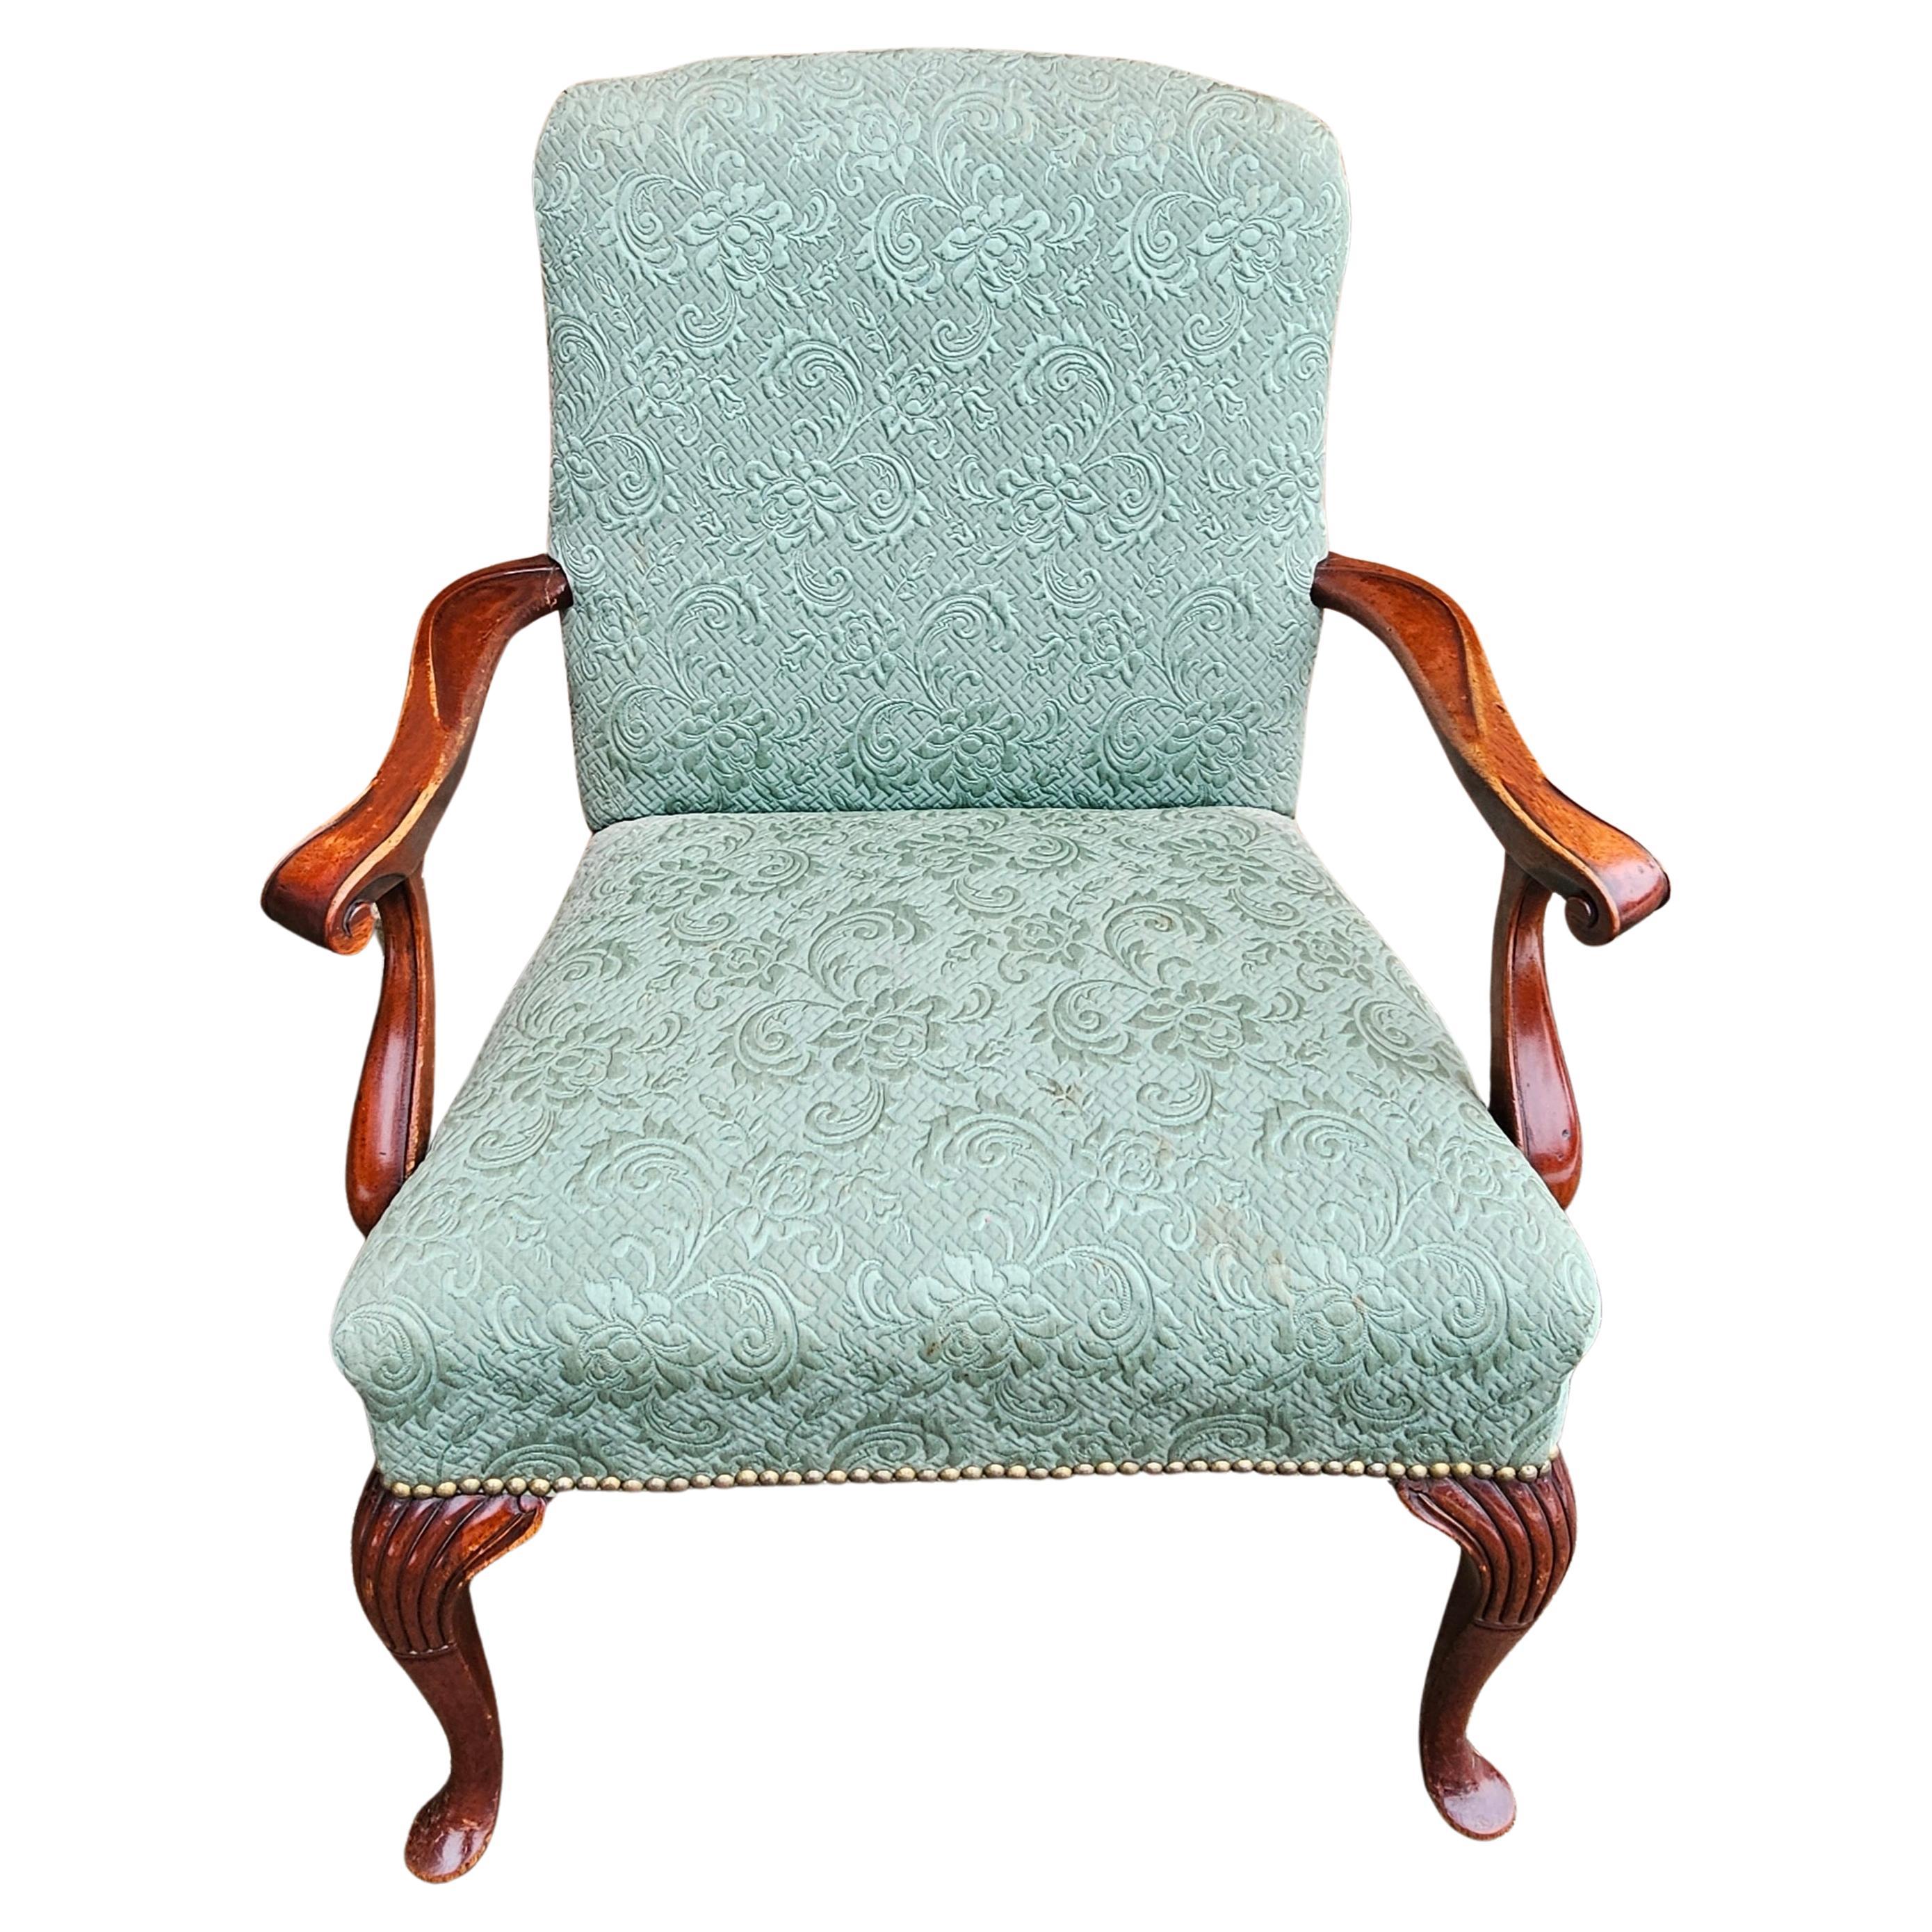 Ein gepolsterter Mahagoni-Sessel im Queen Anne-Stil aus der Mitte des 20. Jahrhunderts. In sehr gutem Vintage-Zustand. Solide Polsterung mit Nagelverzierung. Maße 28